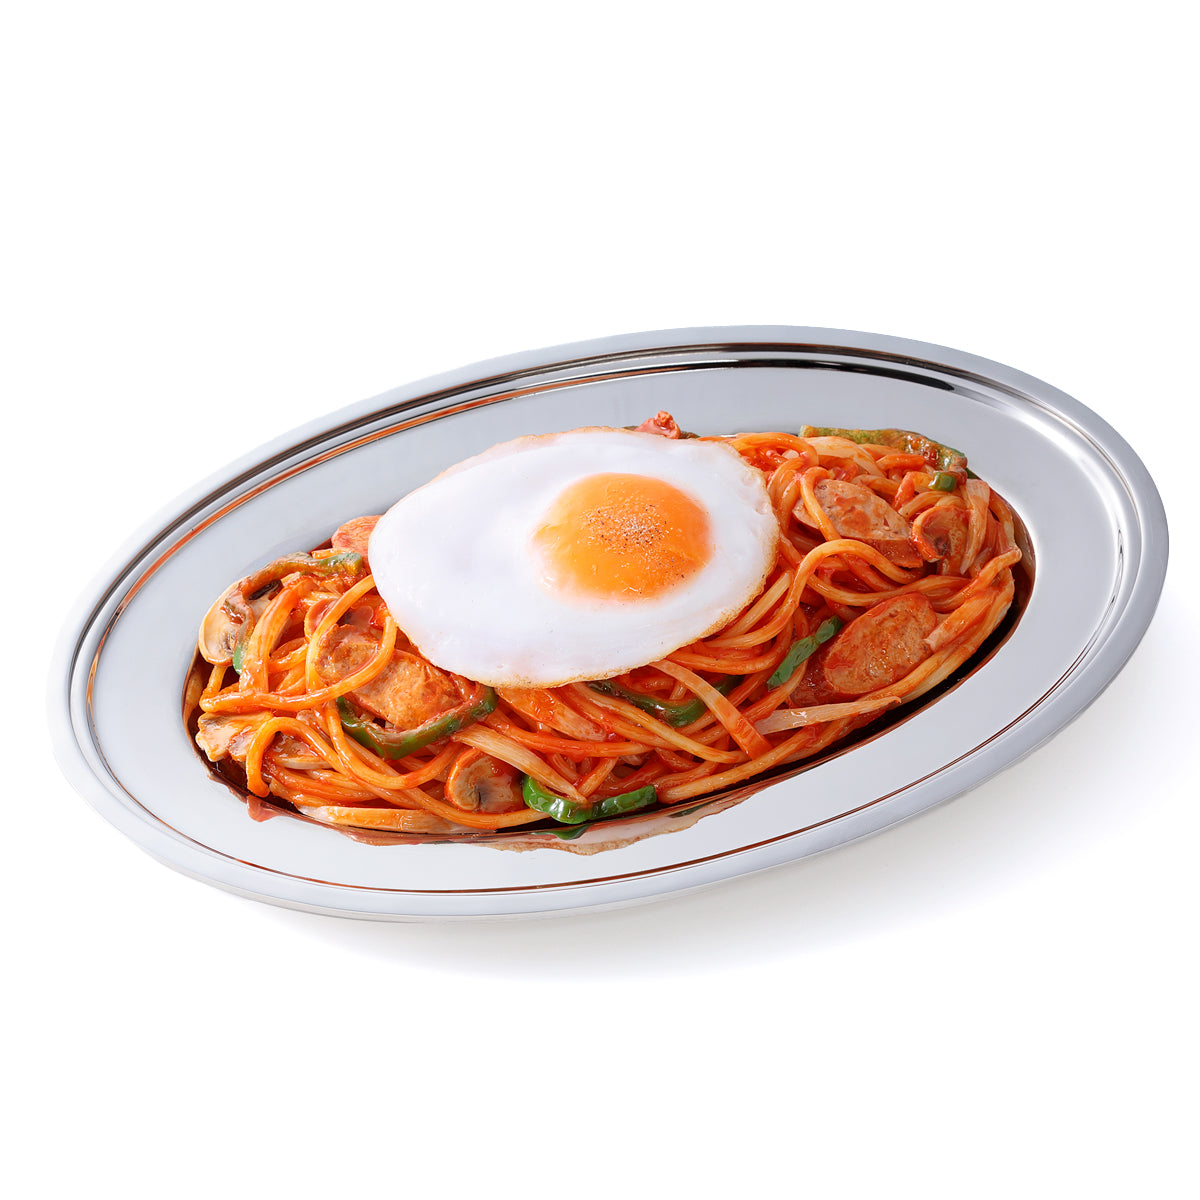 オリジナル食品サンプル「ナポリタン」の商品画像です。(英語表記)Naporitan / tomato-based / ketchup-based spaghetti